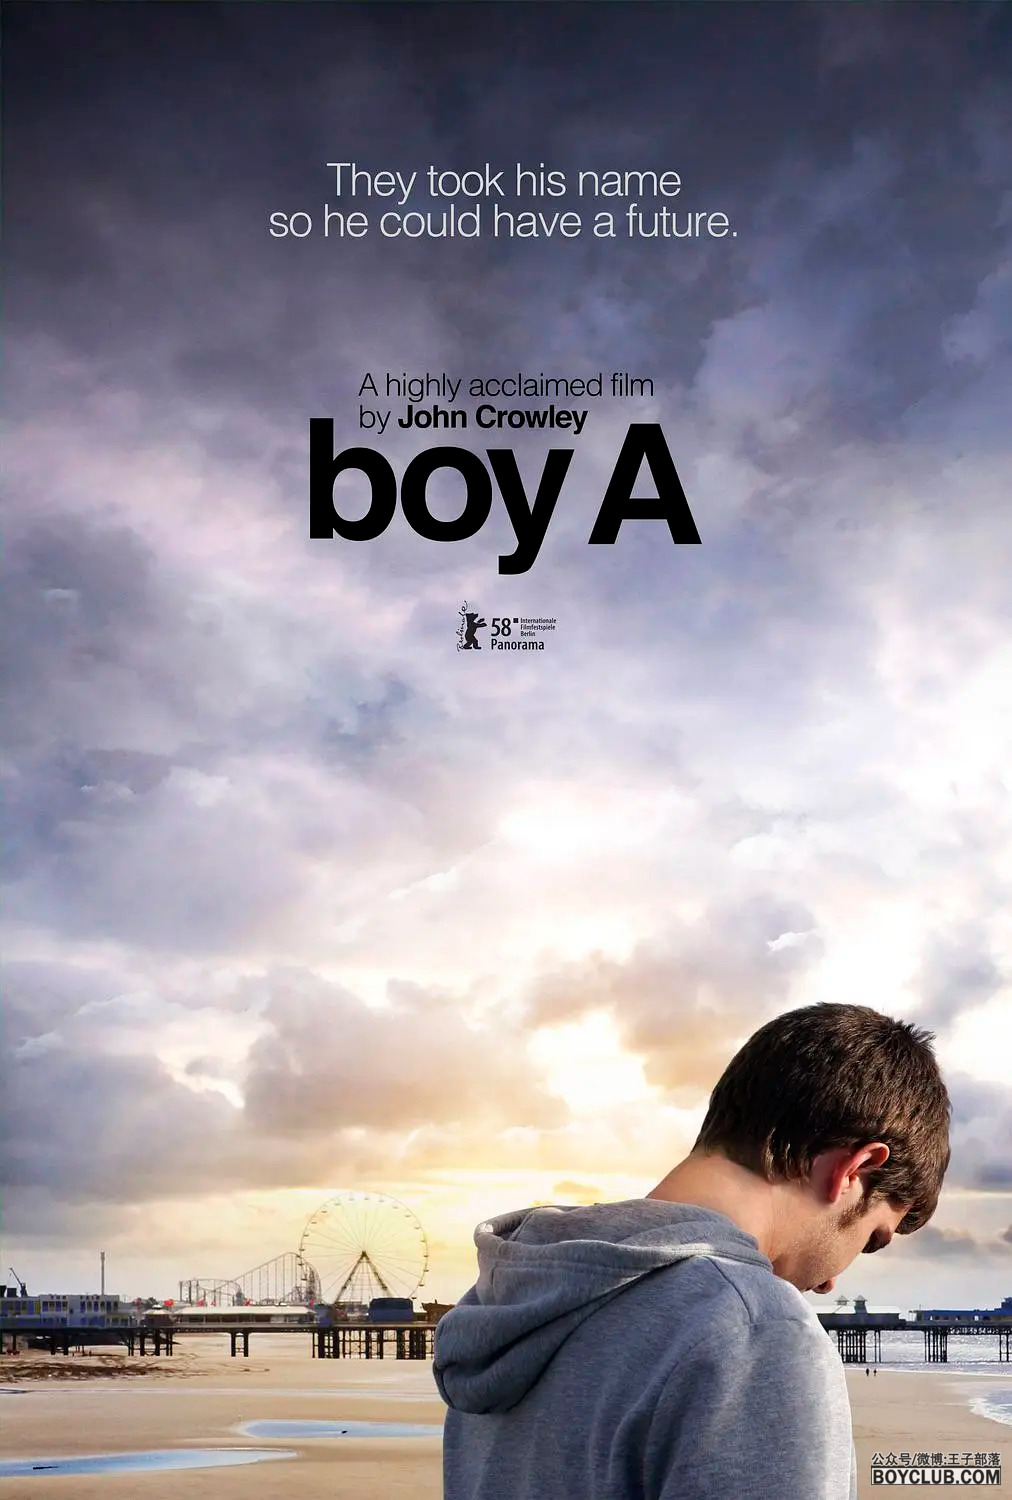 同名获奖小说改编高分电影： 男孩A Boy A (2007) 小王子社 独家上映 文末VIP可看